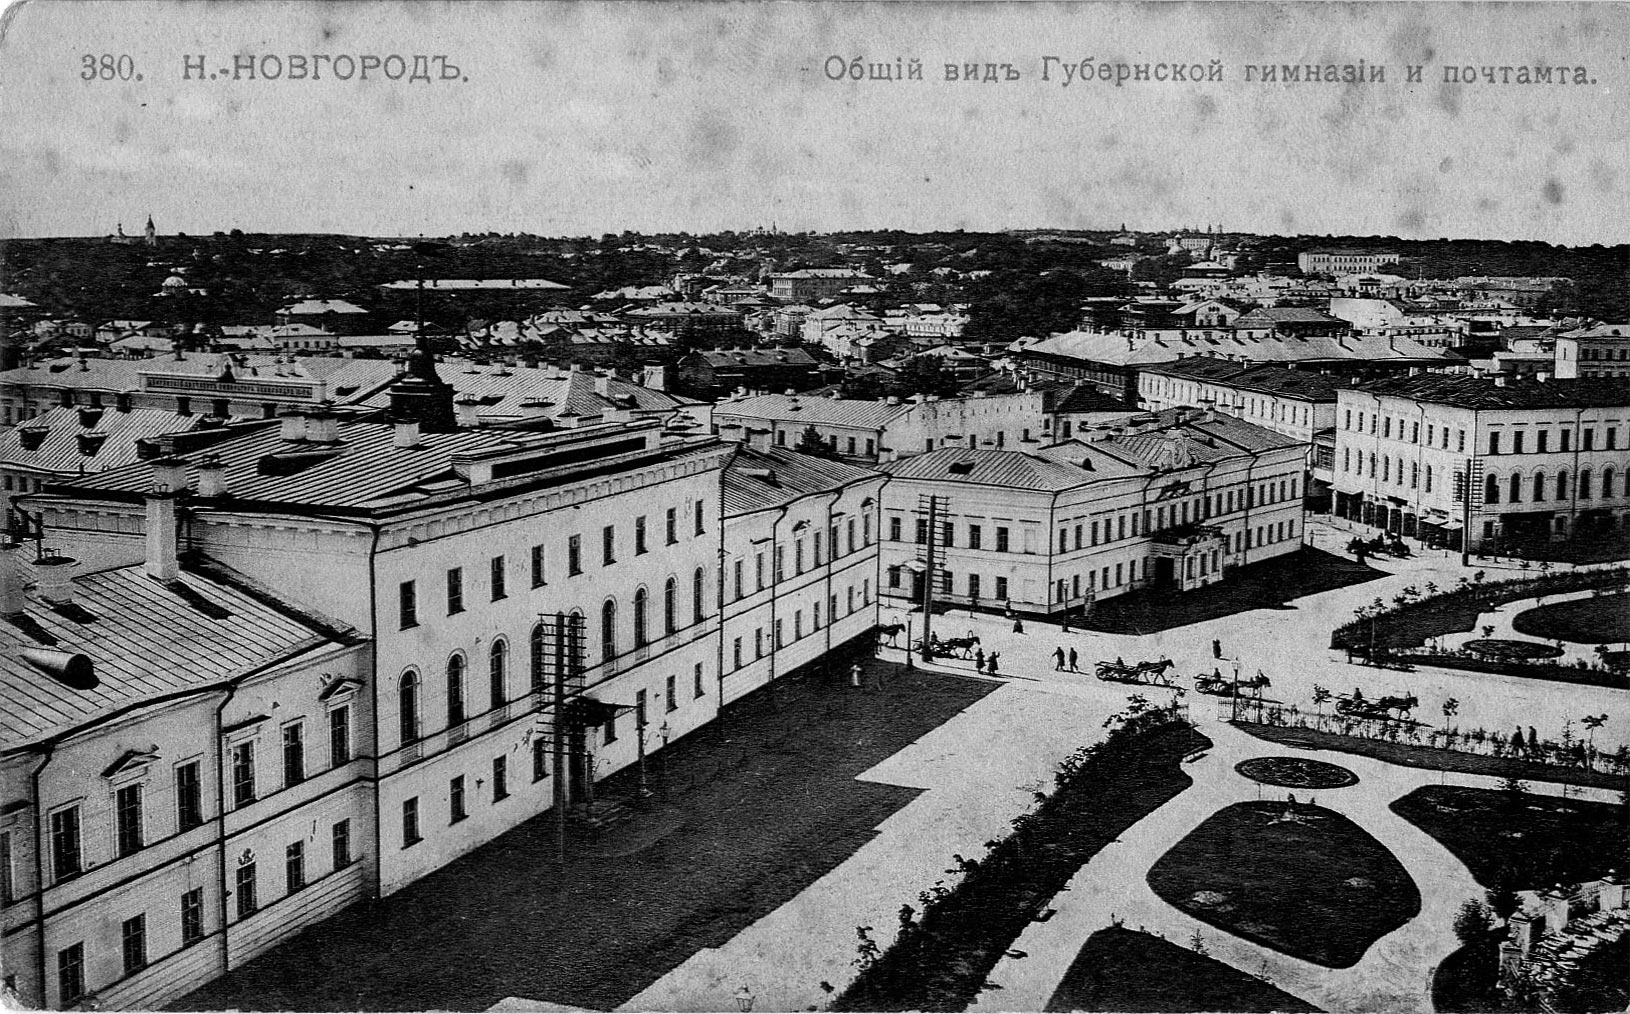 110 лет истории Нижегородской губернской гимназии